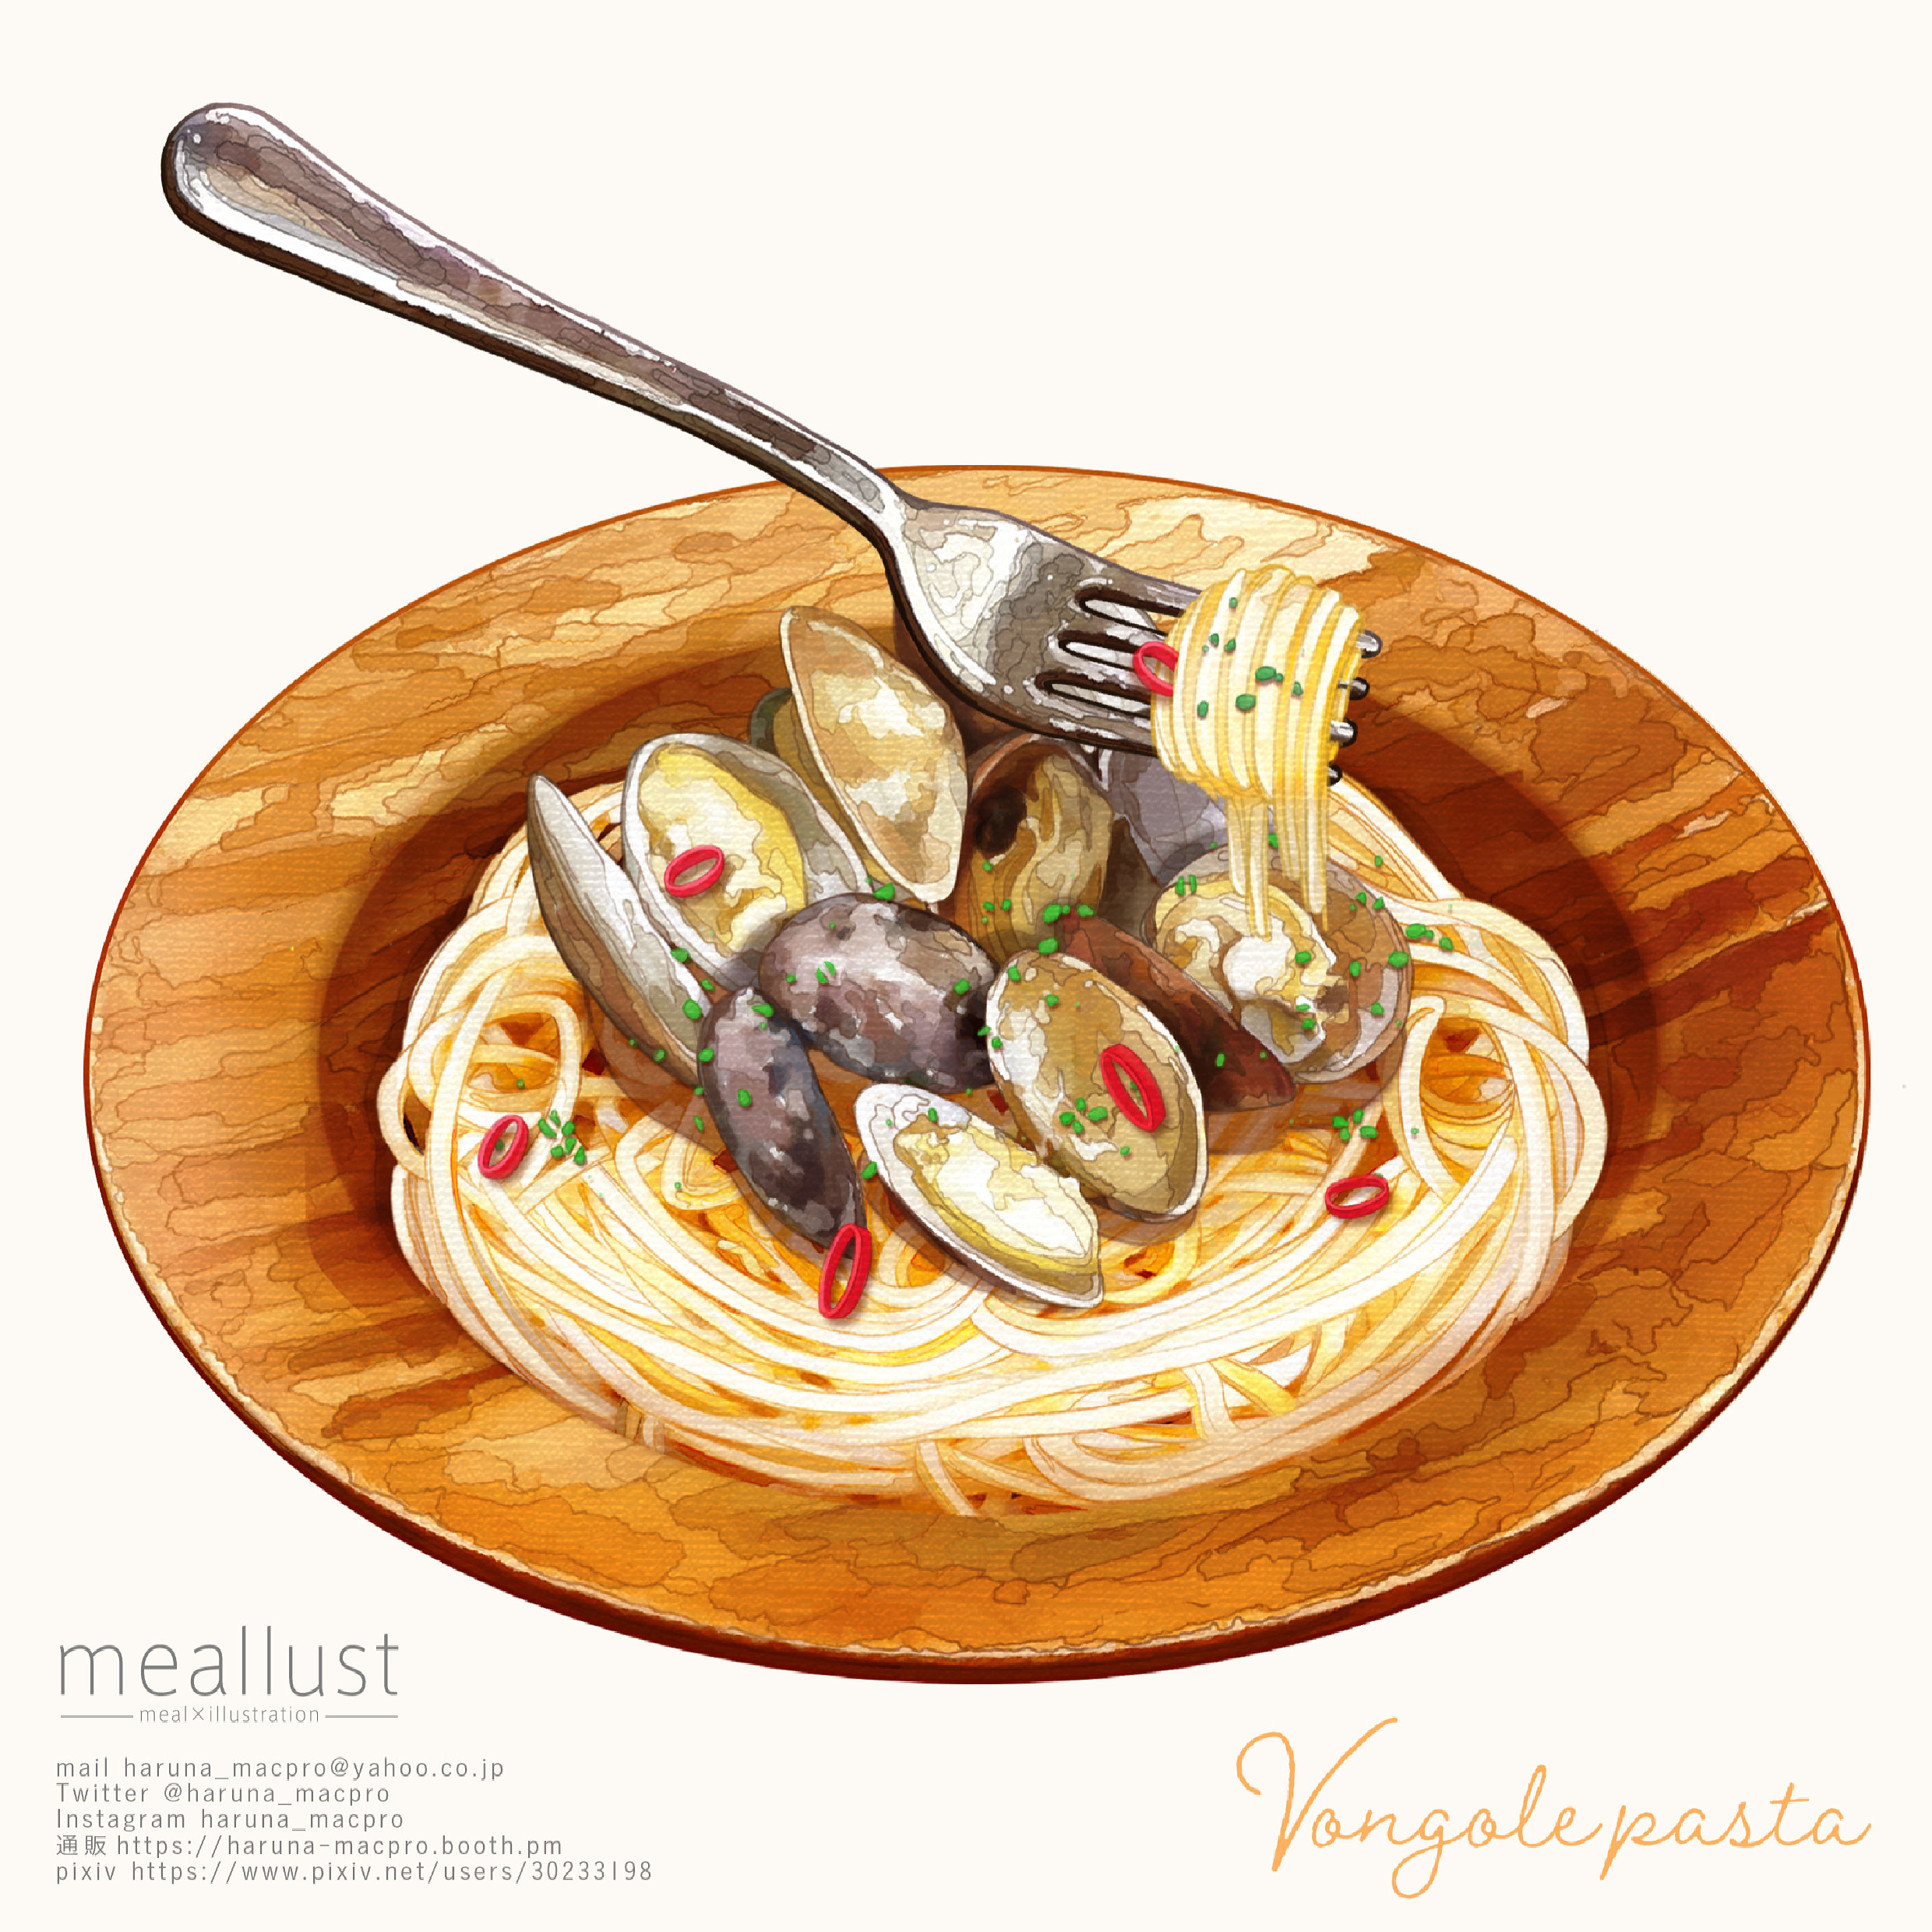 vongole pasta-食物创作